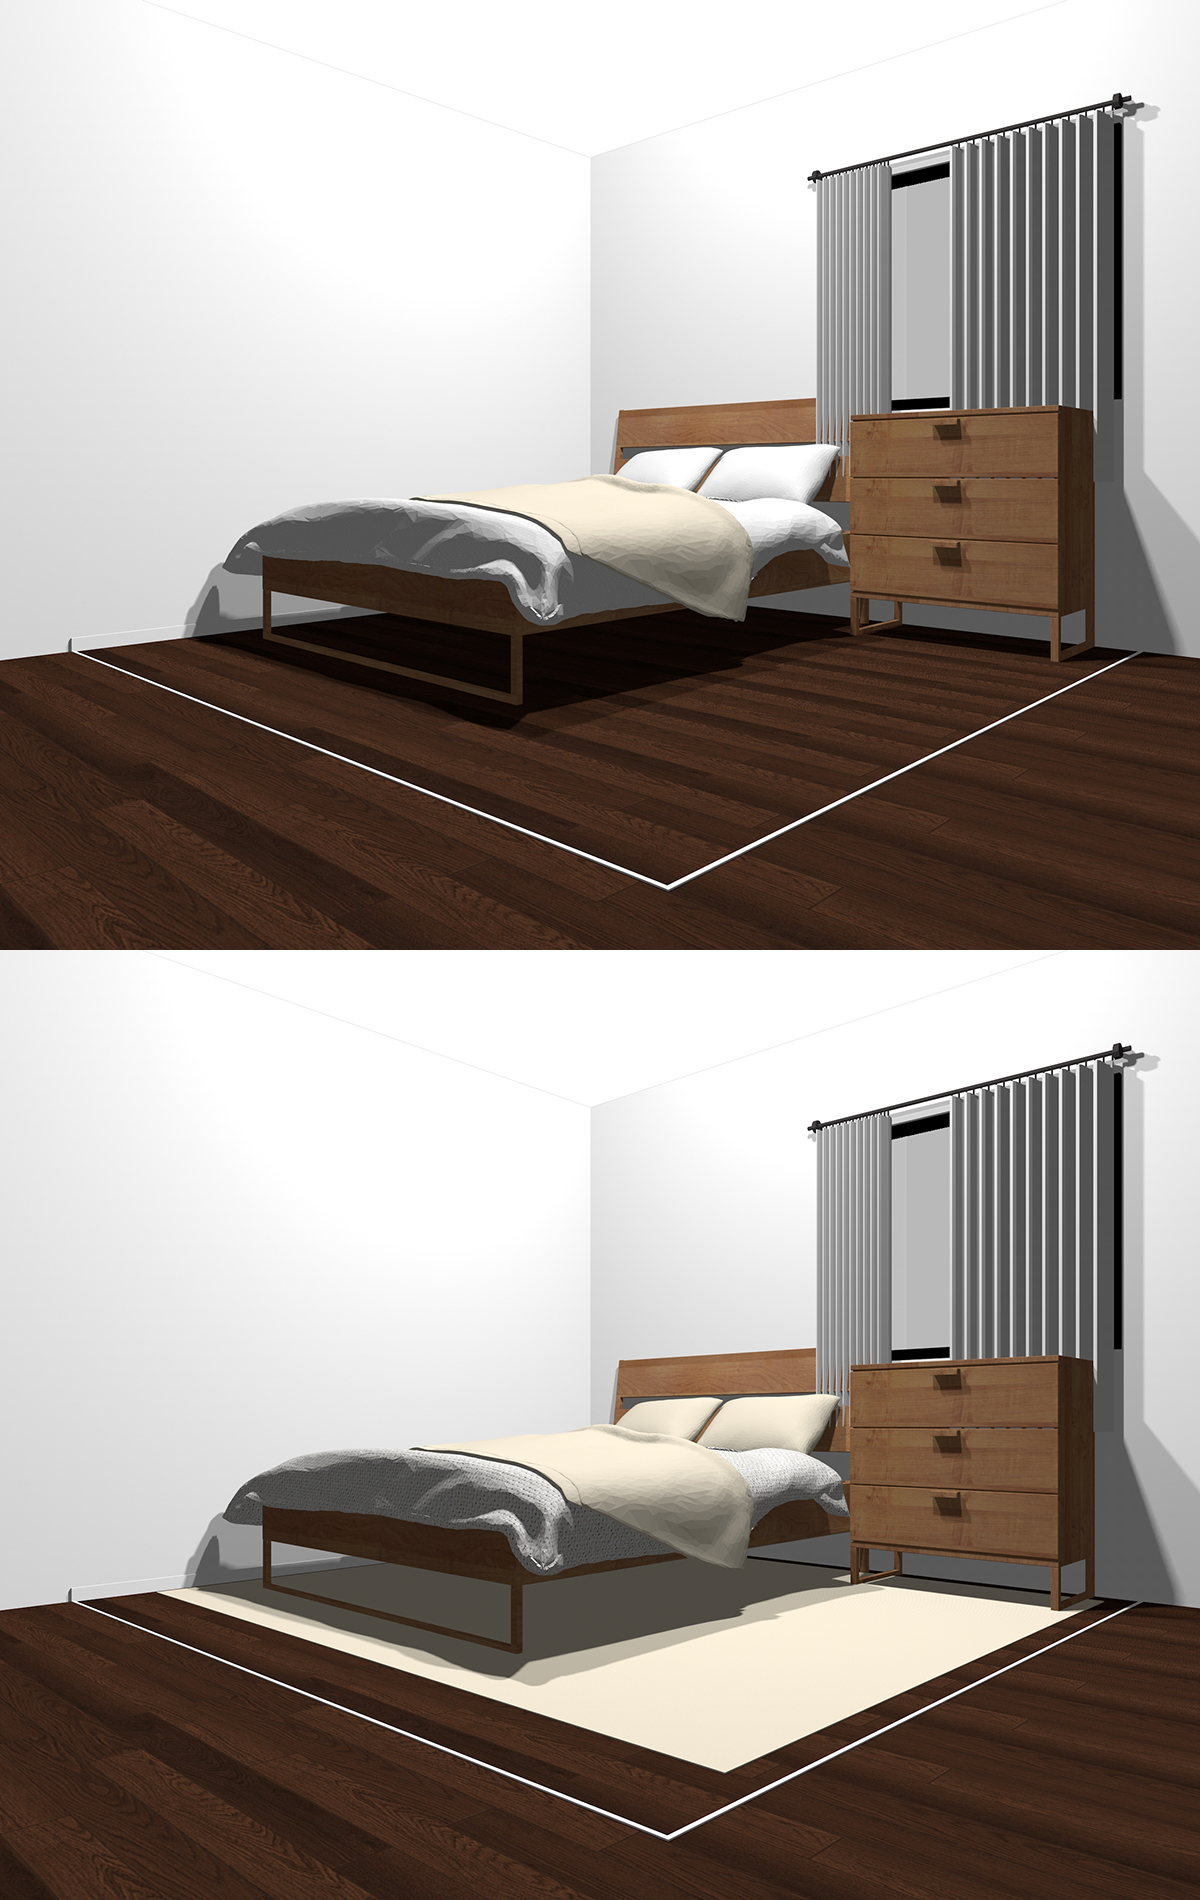 暗い茶色のフローリングの狭い寝室と暗い茶色のフローリングの上に白っぽい色のラグを敷いた狭い寝室の比較